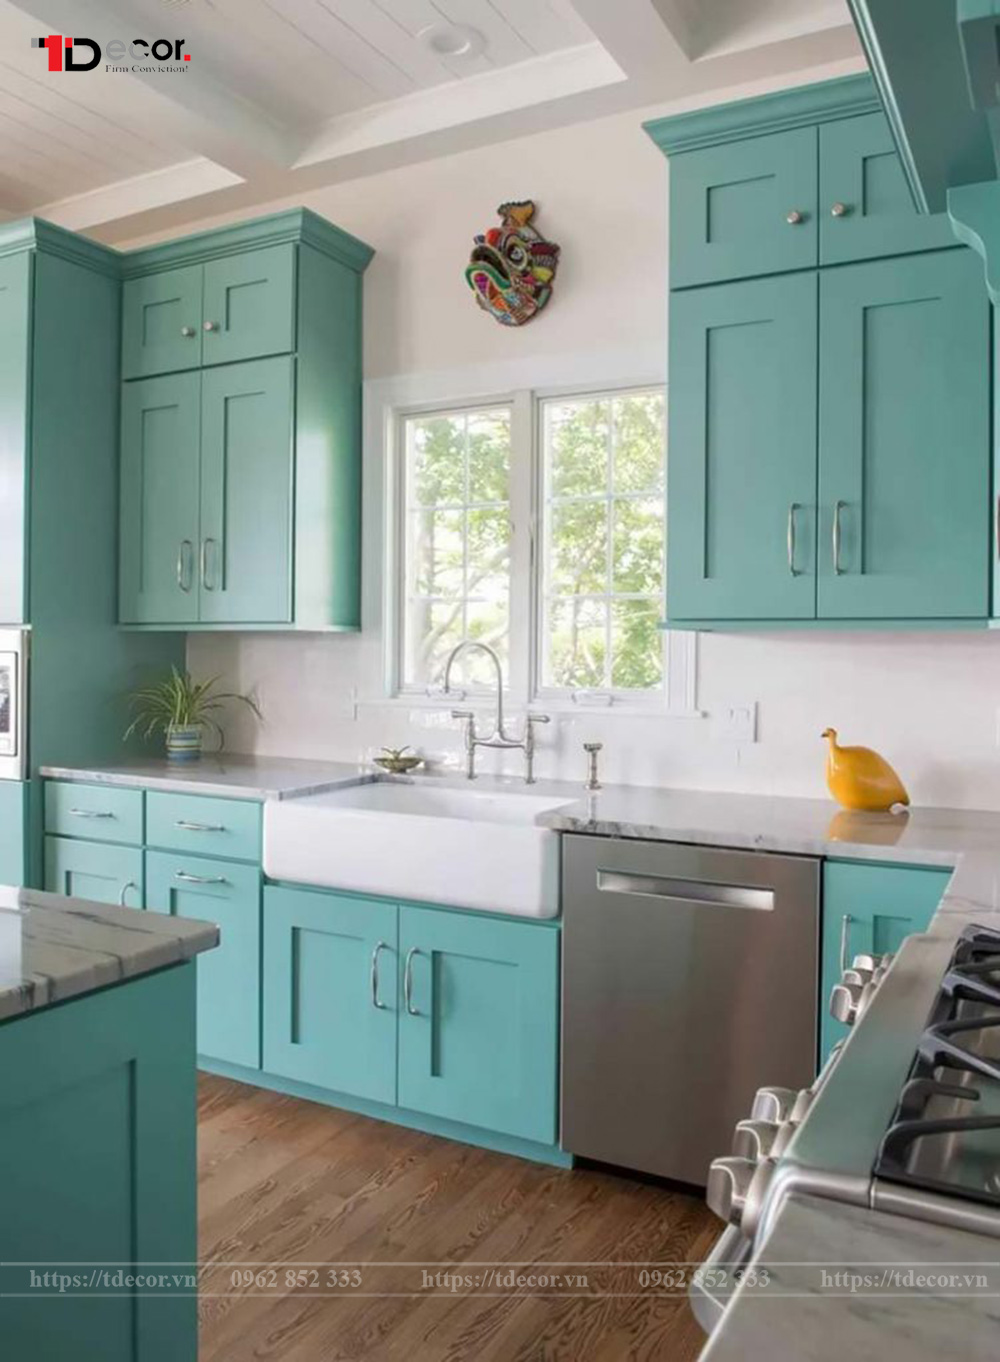 Ý nghĩa màu Turquoise trong thiết kế nội thất